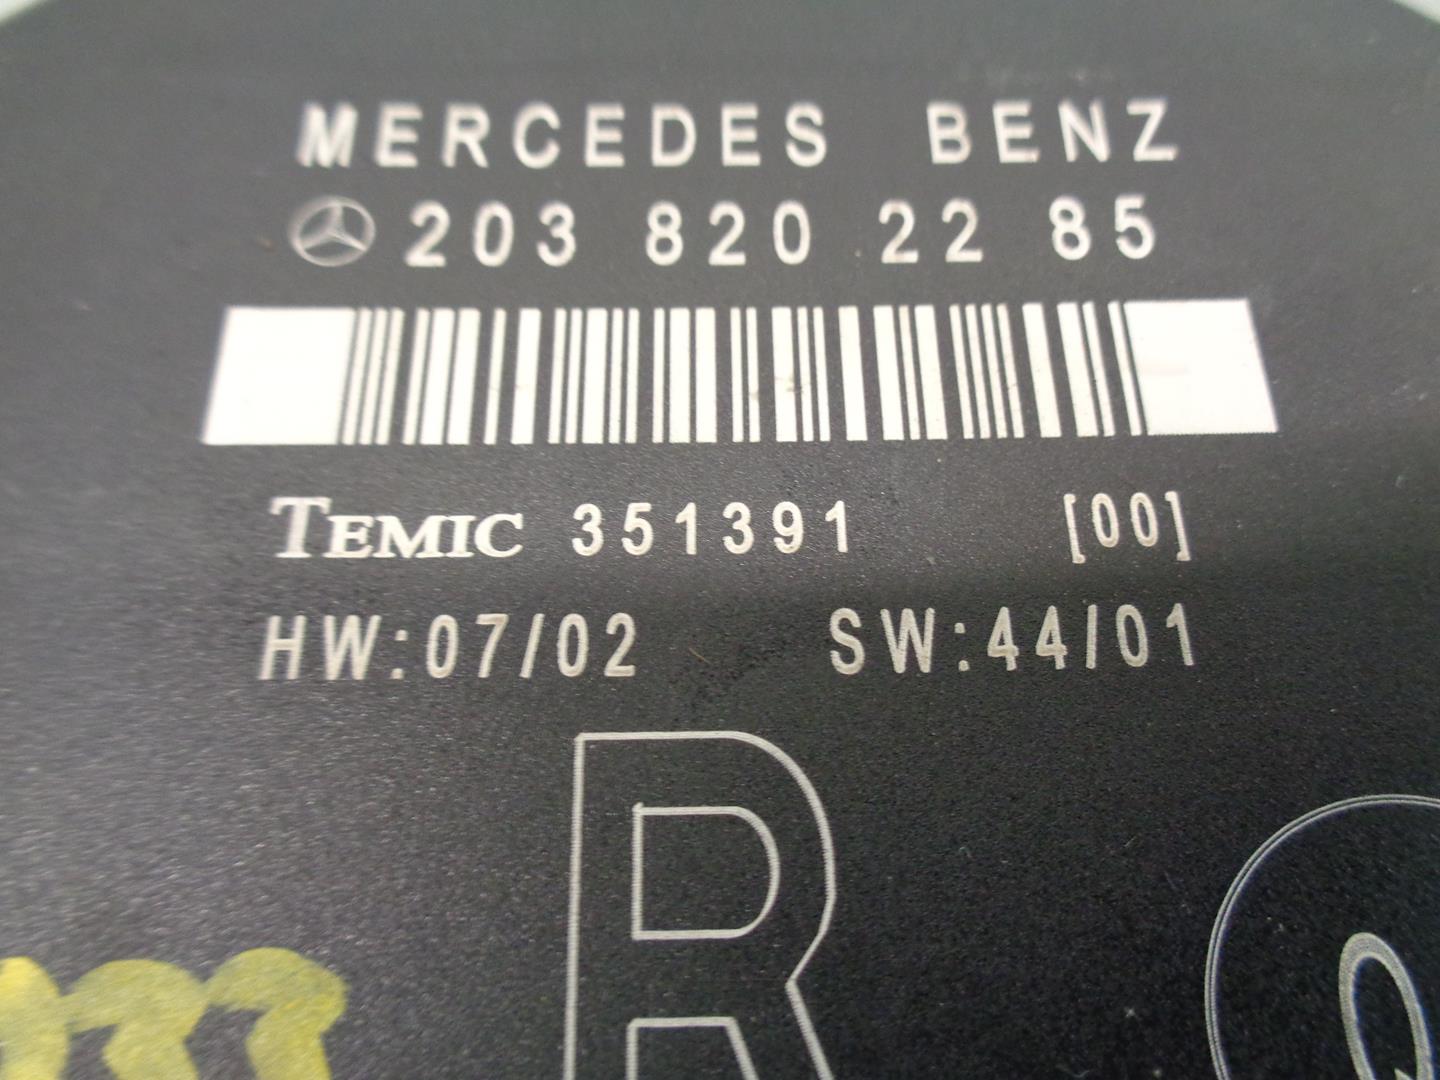 MERCEDES-BENZ C-Class W203/S203/CL203 (2000-2008) Другие блоки управления 2038202285 19761280